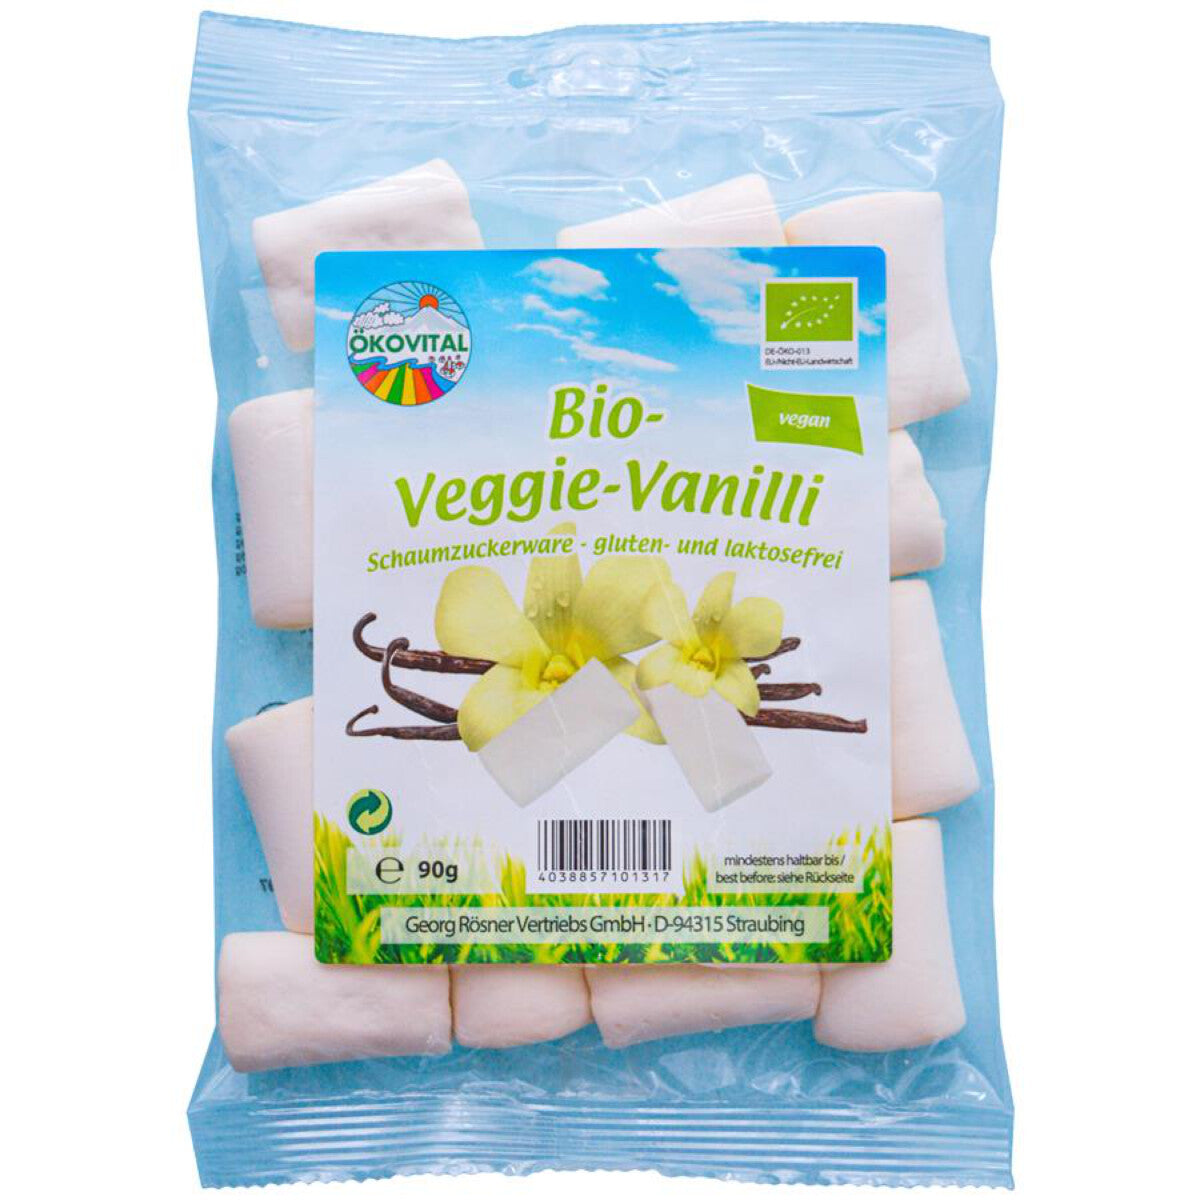 ÖKOVITAL RÖSNER Vanilla Mellows vegan - 90 g